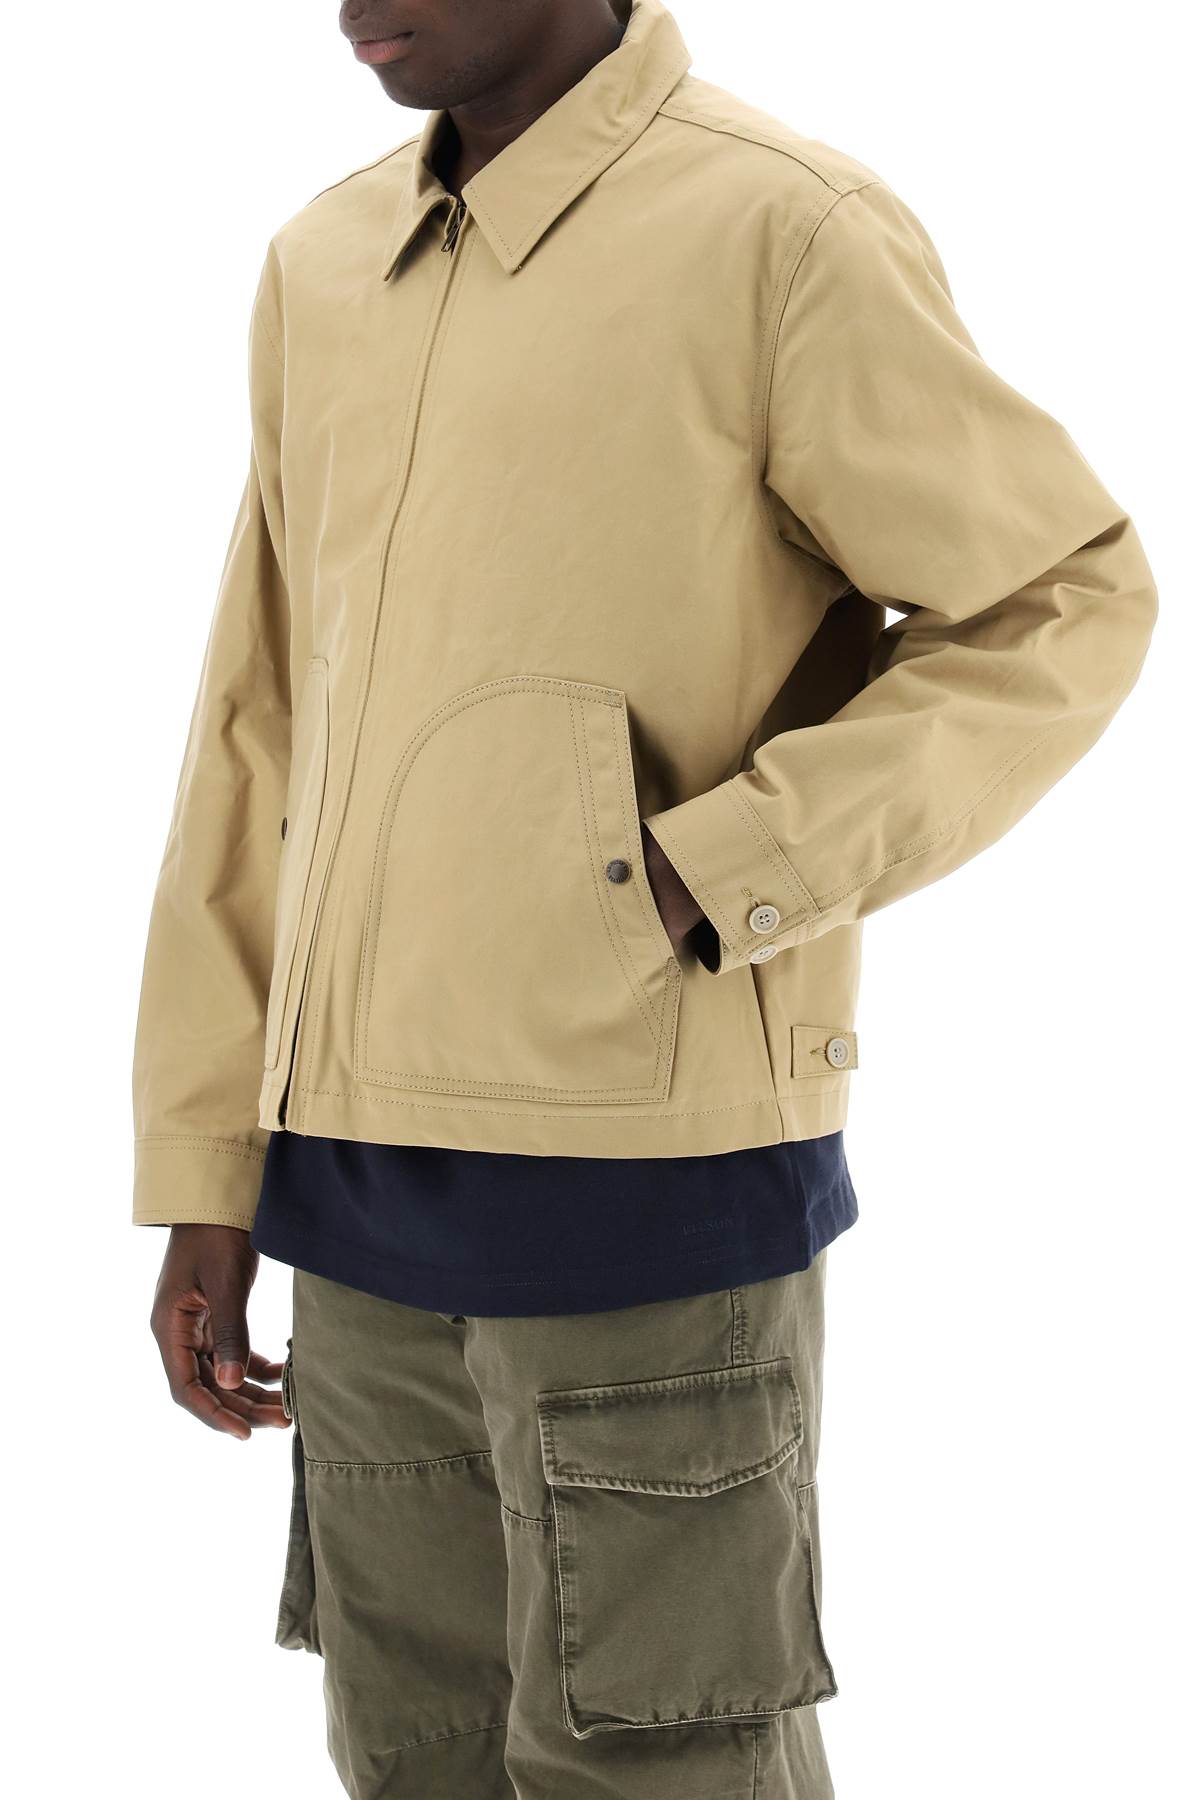 Filson ranger crewman jacket-3